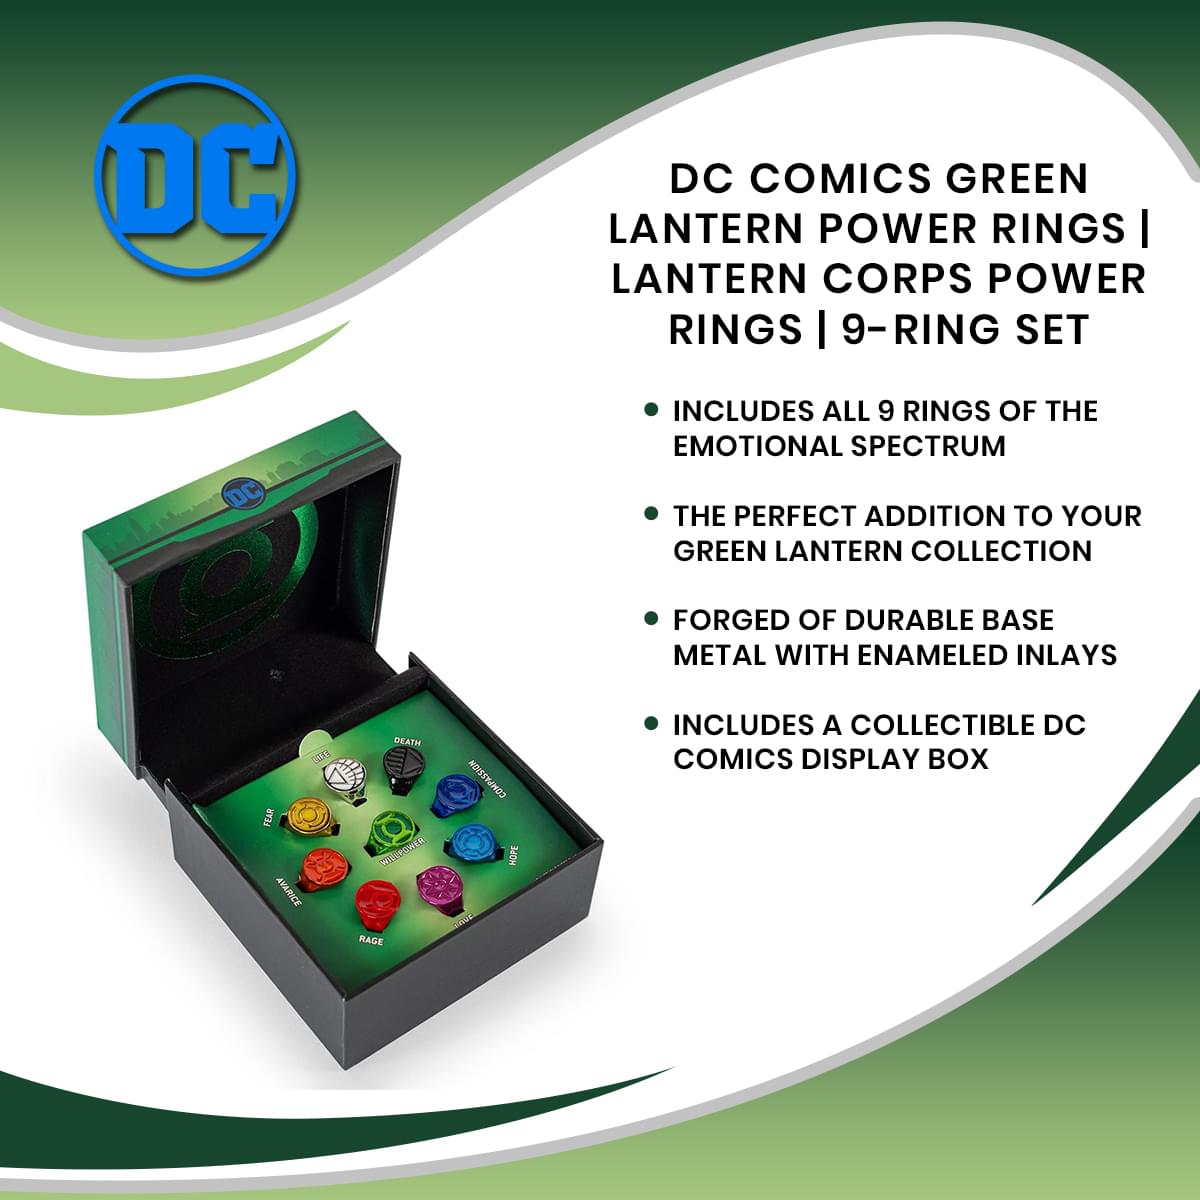 DC Comics Green Lantern Power Rings | Lantern Corps Power Rings | 9-Ring Set